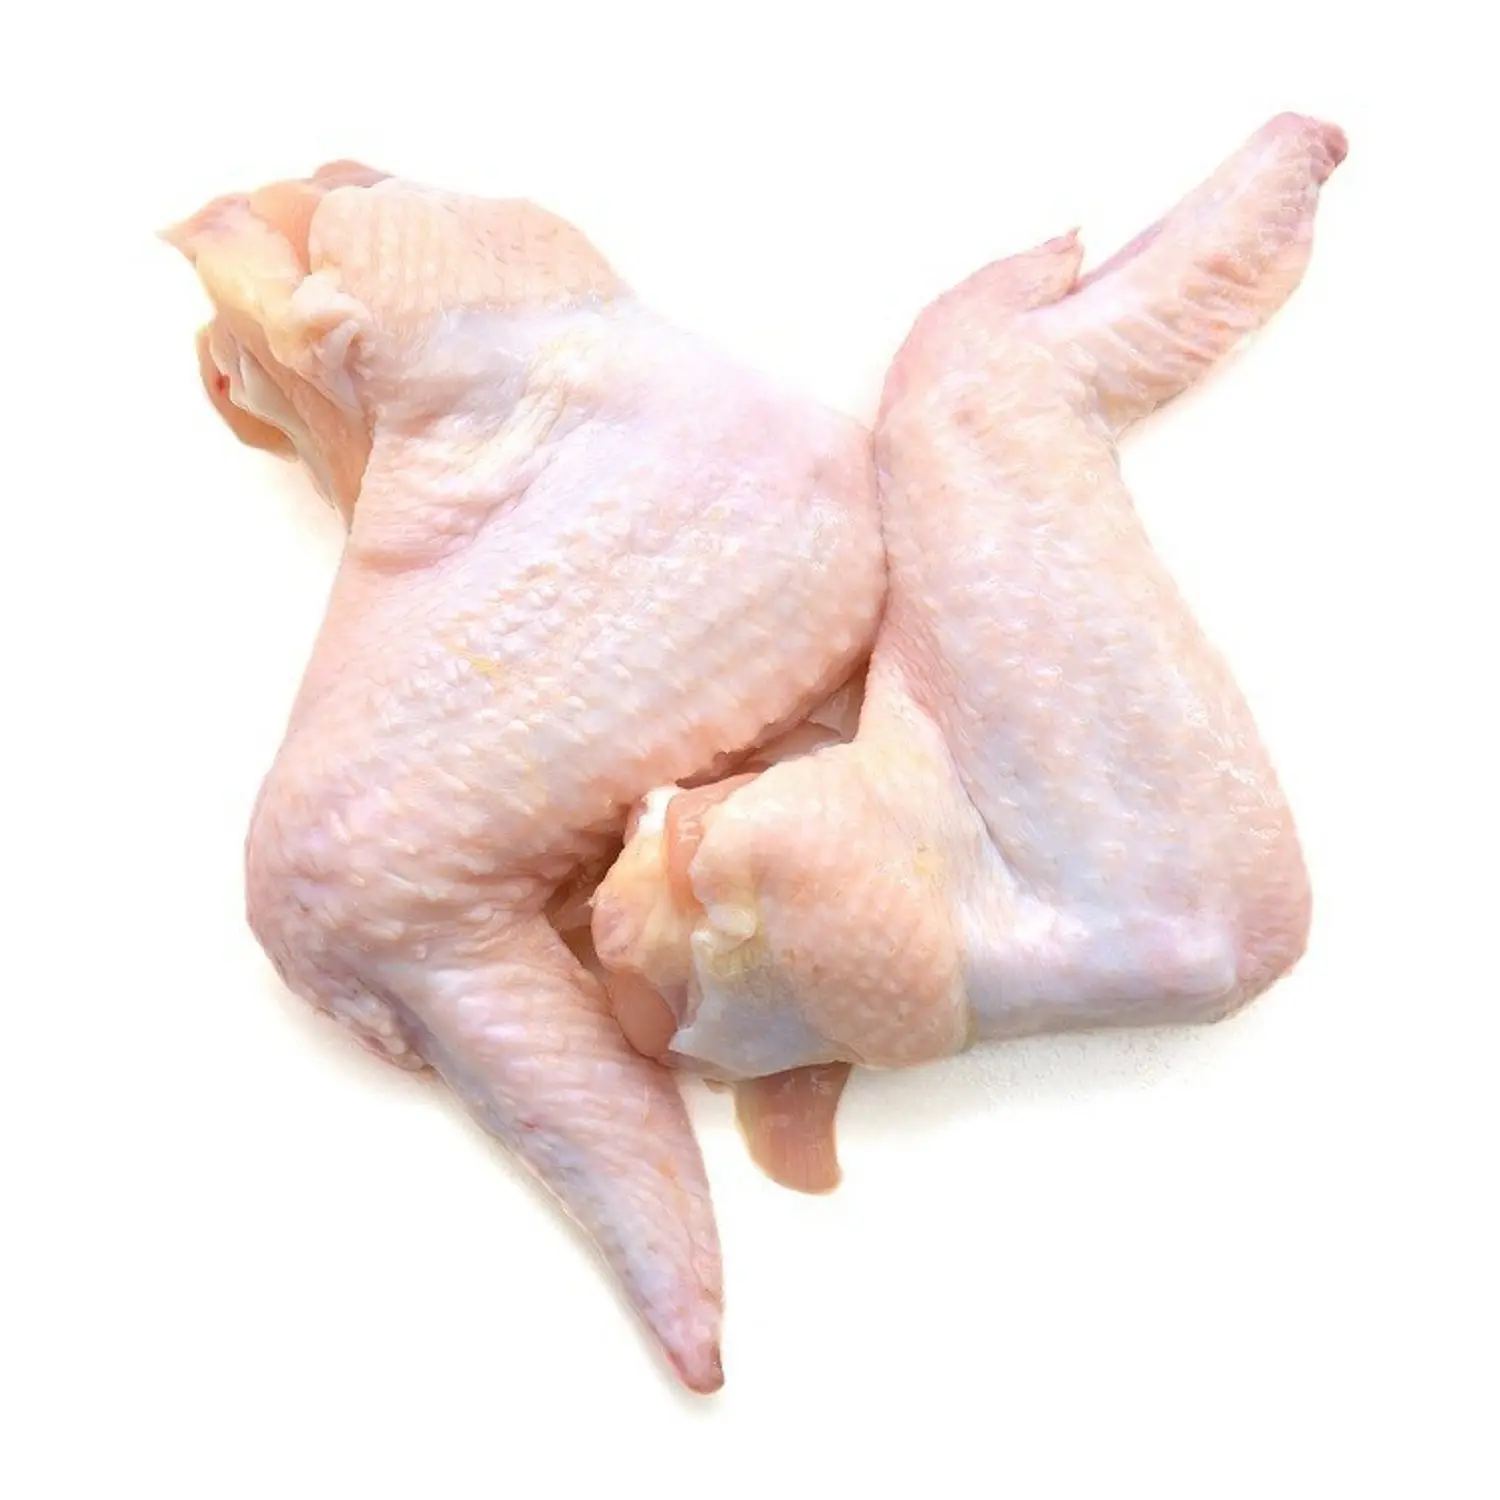 Alas de articulación media de pollo baratas congeladas Halal/3 Alas de pollo articuladas, articulaciones ala de pollo 2/ala de pollo congelada